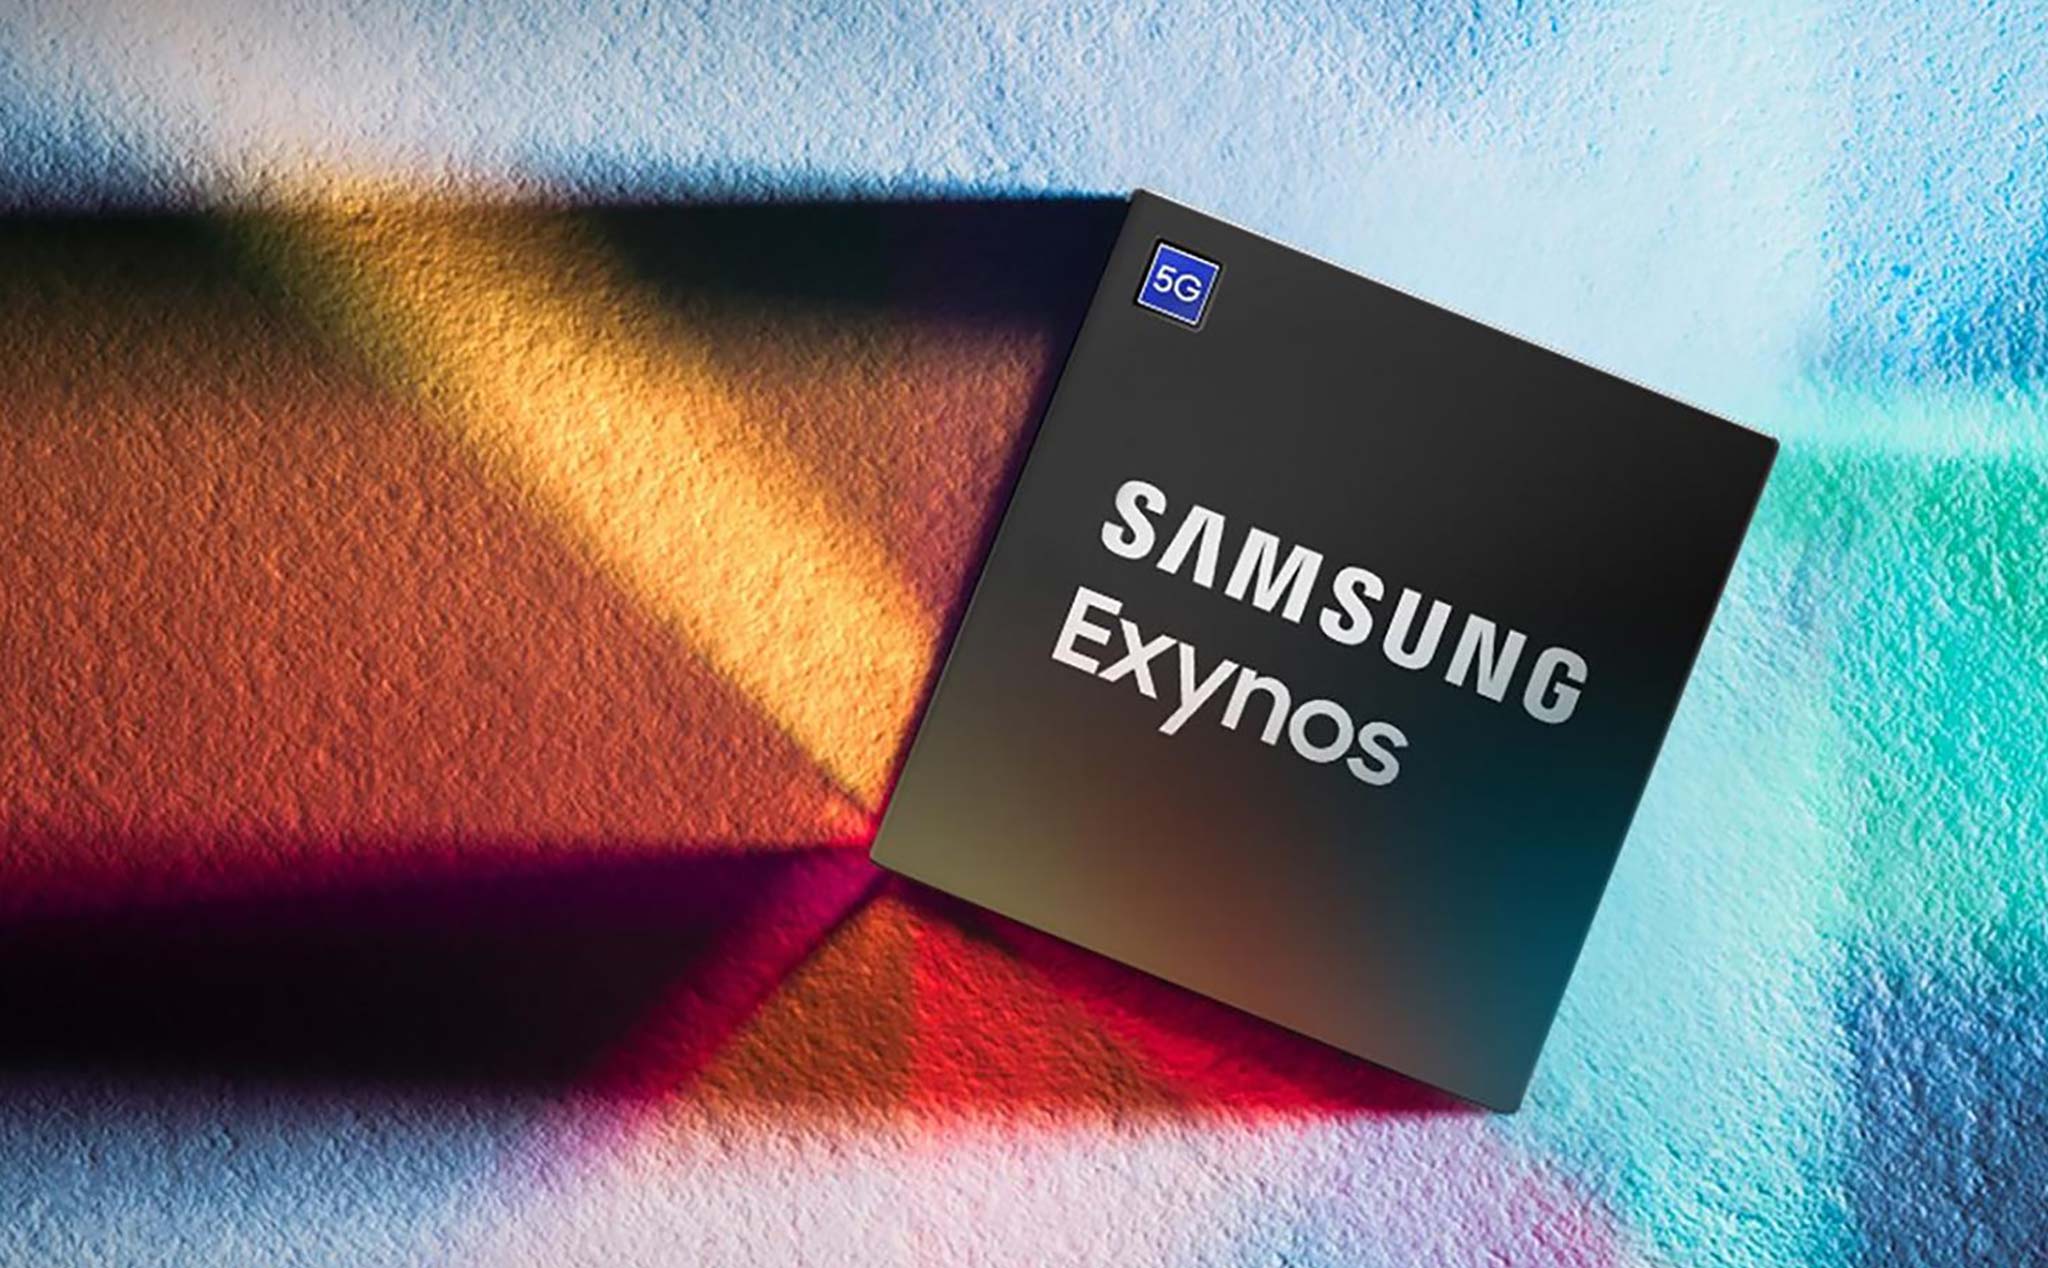 Chip Exynos được Samsung tích hợp nhằm dằn mặt "đối thủ" M1